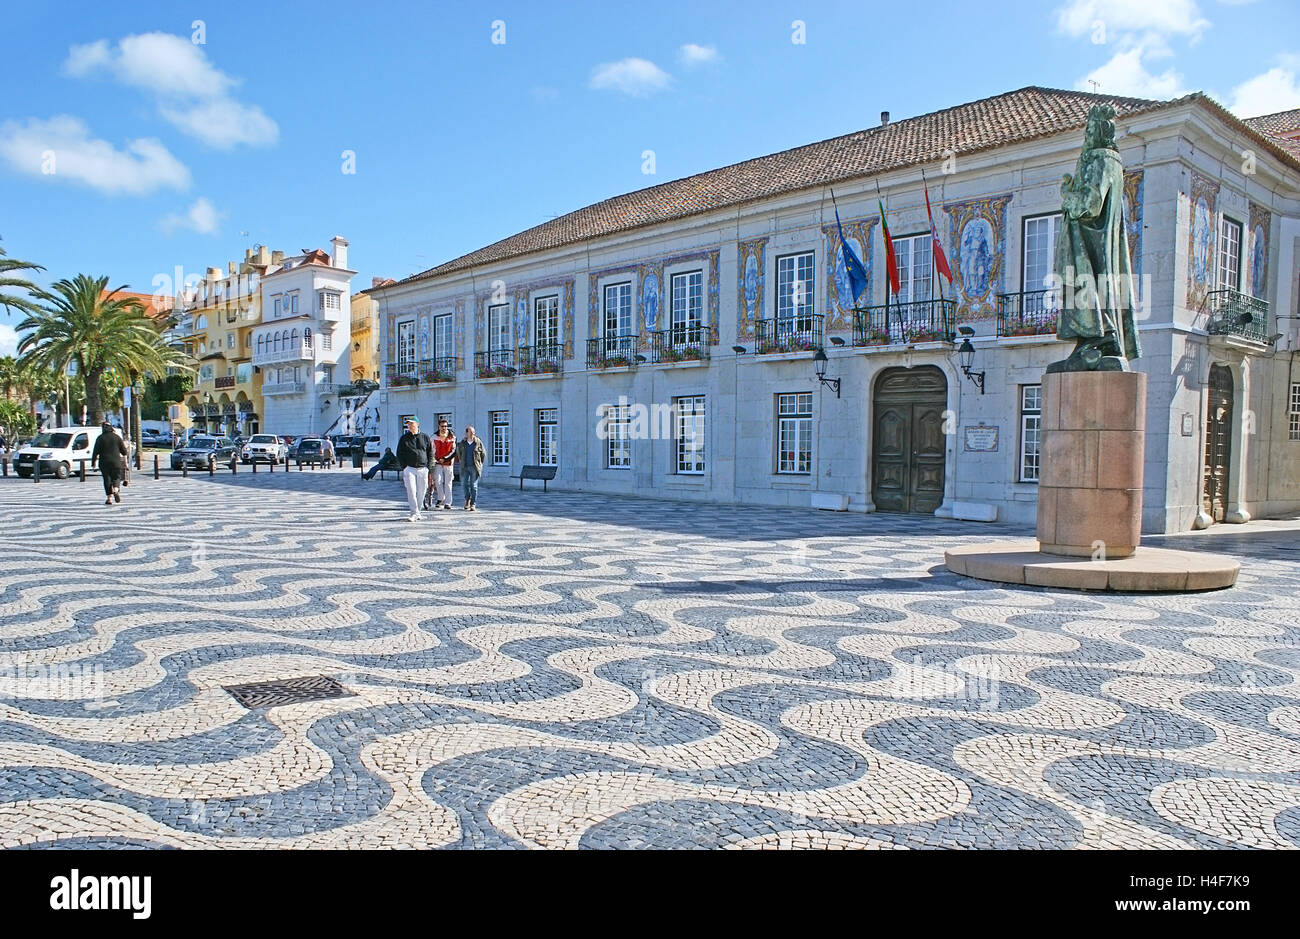 La Camara Municipal (Mairie) décorées d'azulejos (carreaux portugais), situé sur la place avec pavage traditionnel Outubro Banque D'Images